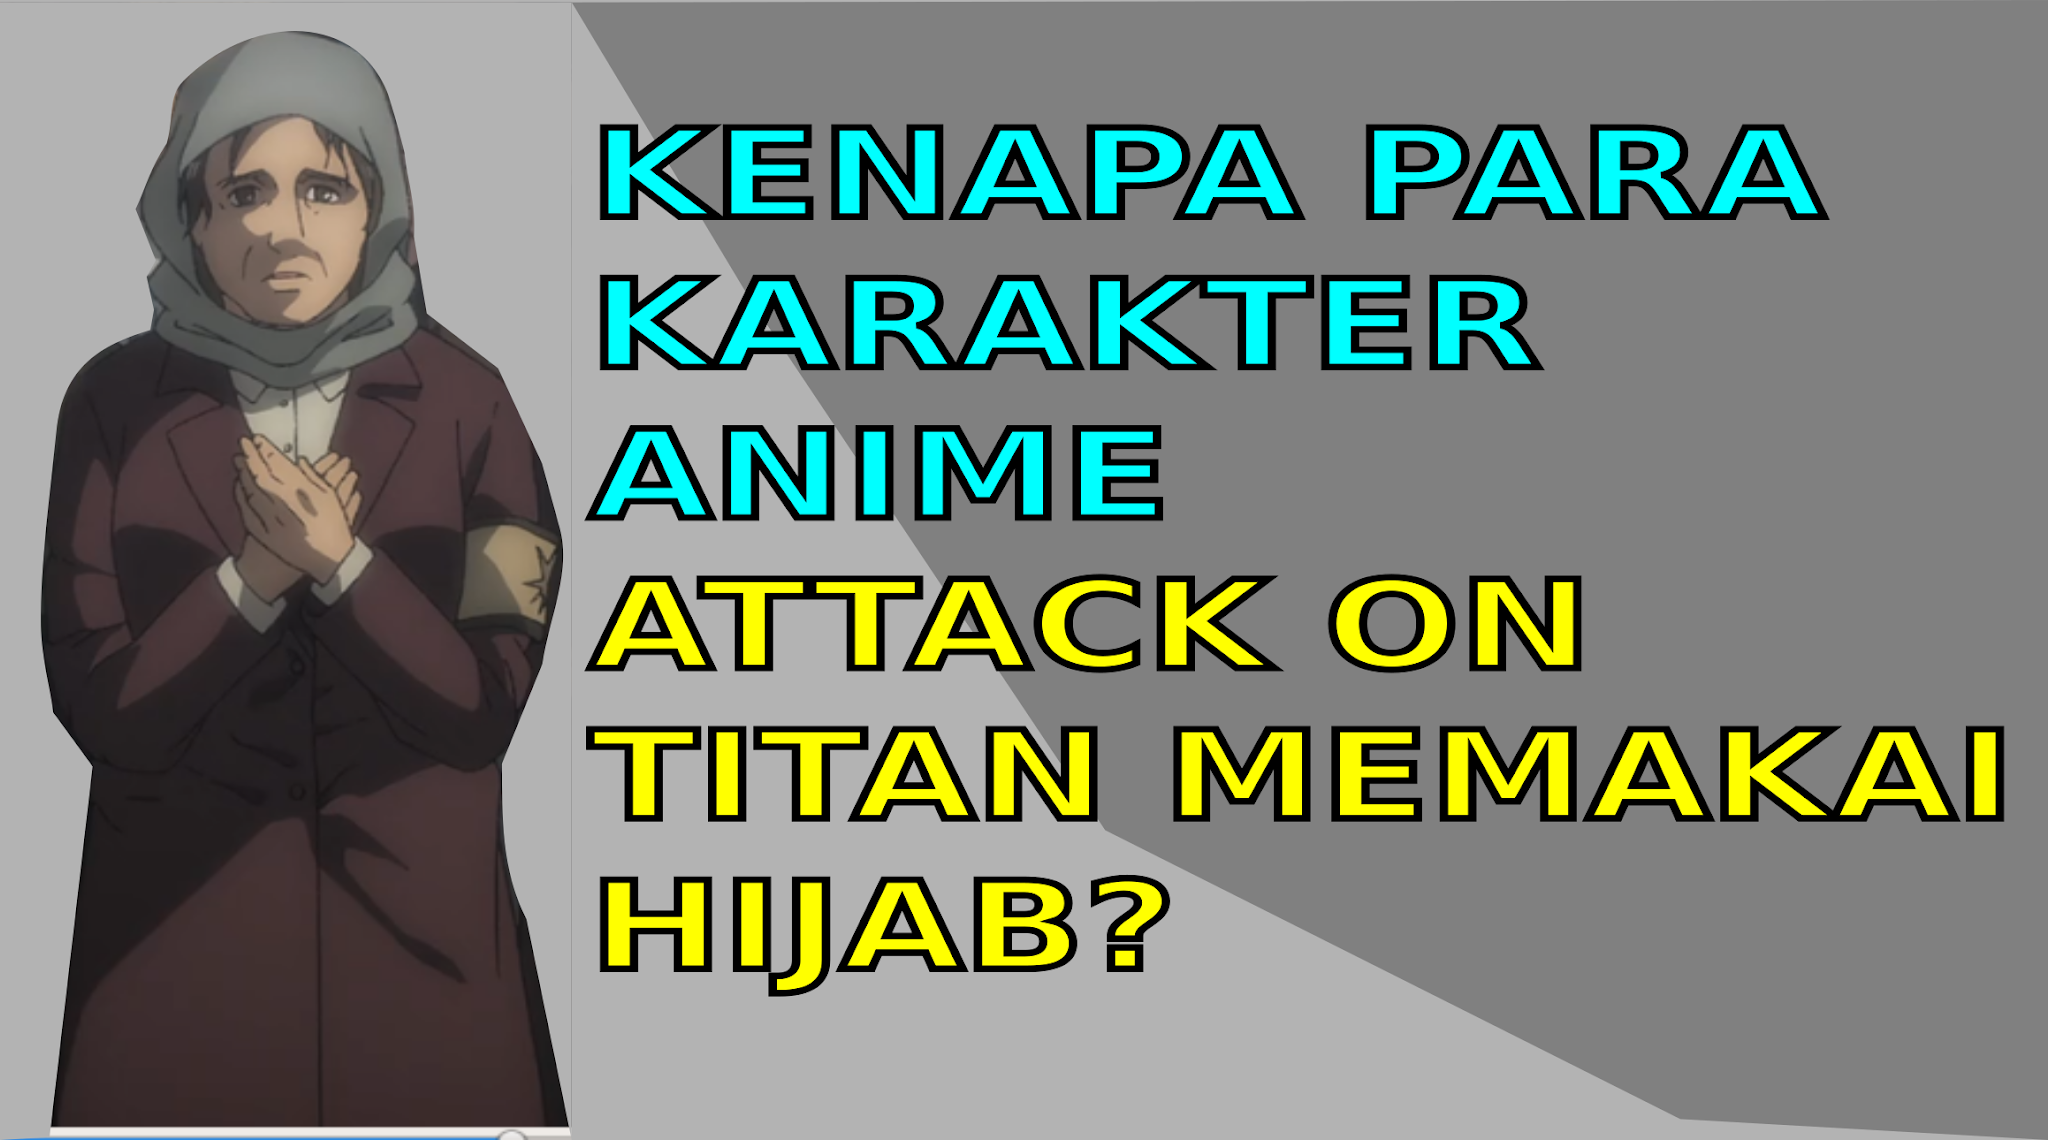 Kenapa Para Karakter Anime Attack On Titan shingeki no kyojin Berhijab kerudung?